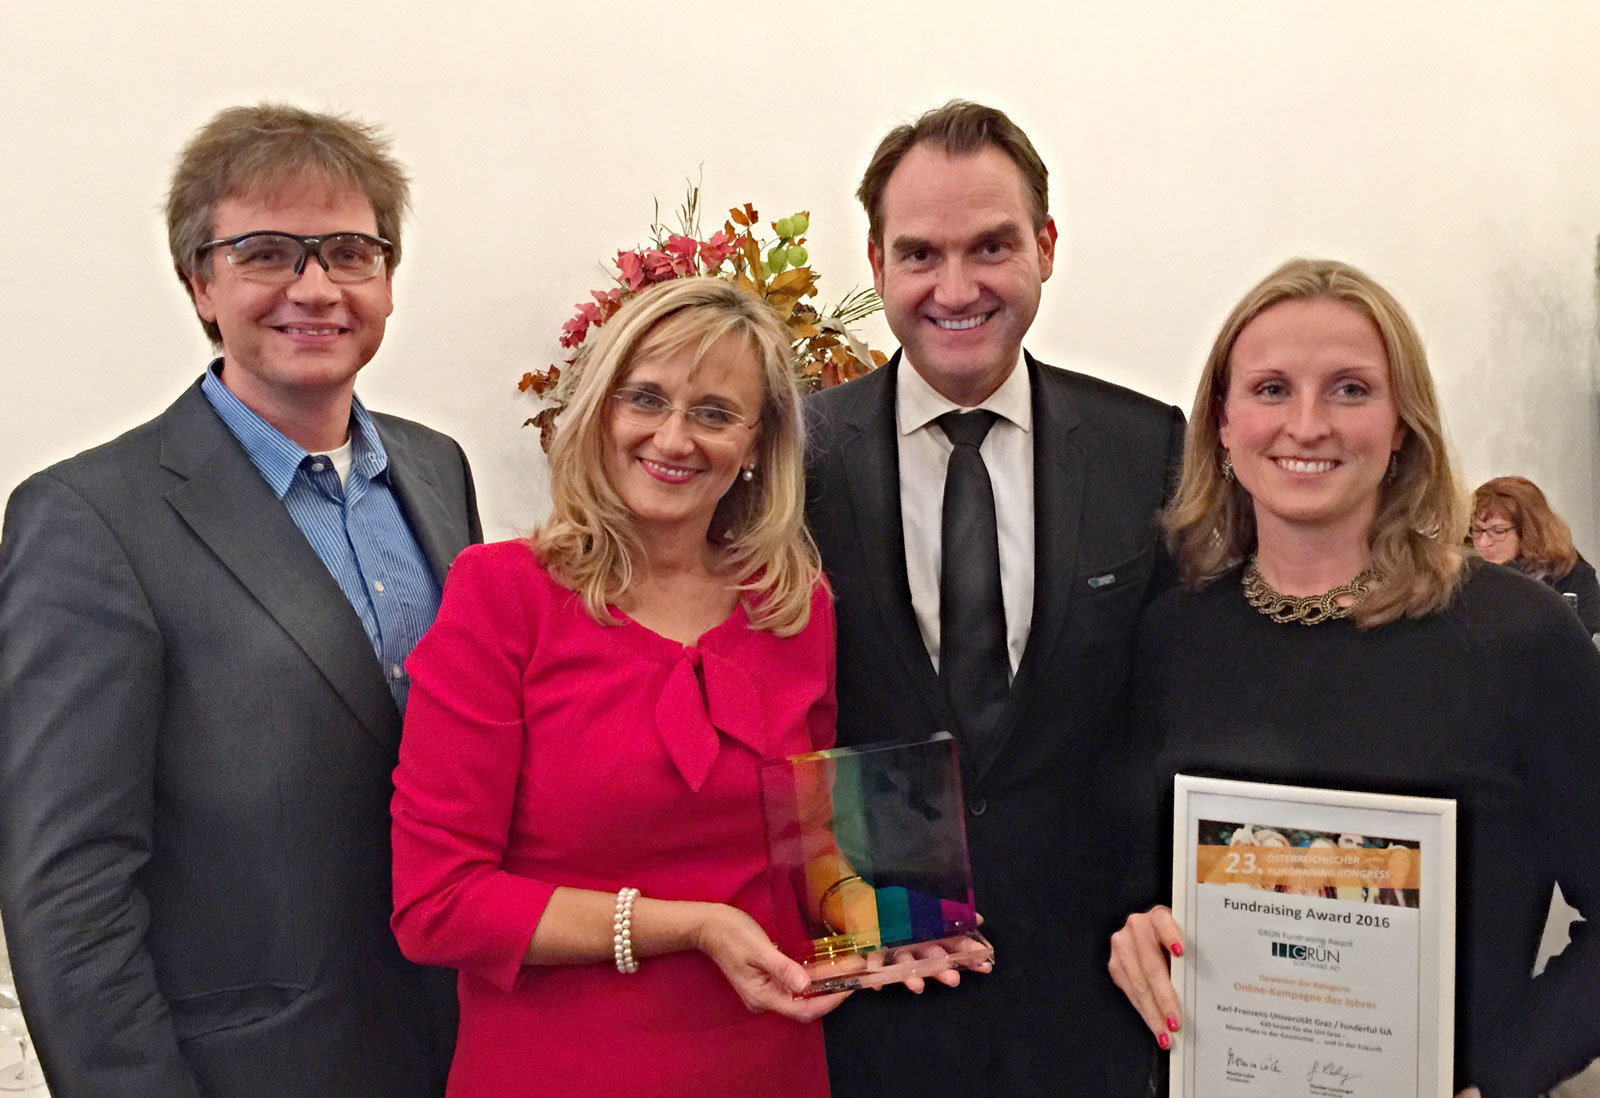 Der GRÜN Fundraising Award 2016 wurde für die beste Online-Kampagne des Jahres an die Universität Graz verliehen. Beatrice Weinelt (2.v.l.) nahm den Preis aus den Händen von Klaus Schwarz (links) und Dr. Oliver Grün (3. v.l.) entgegen.